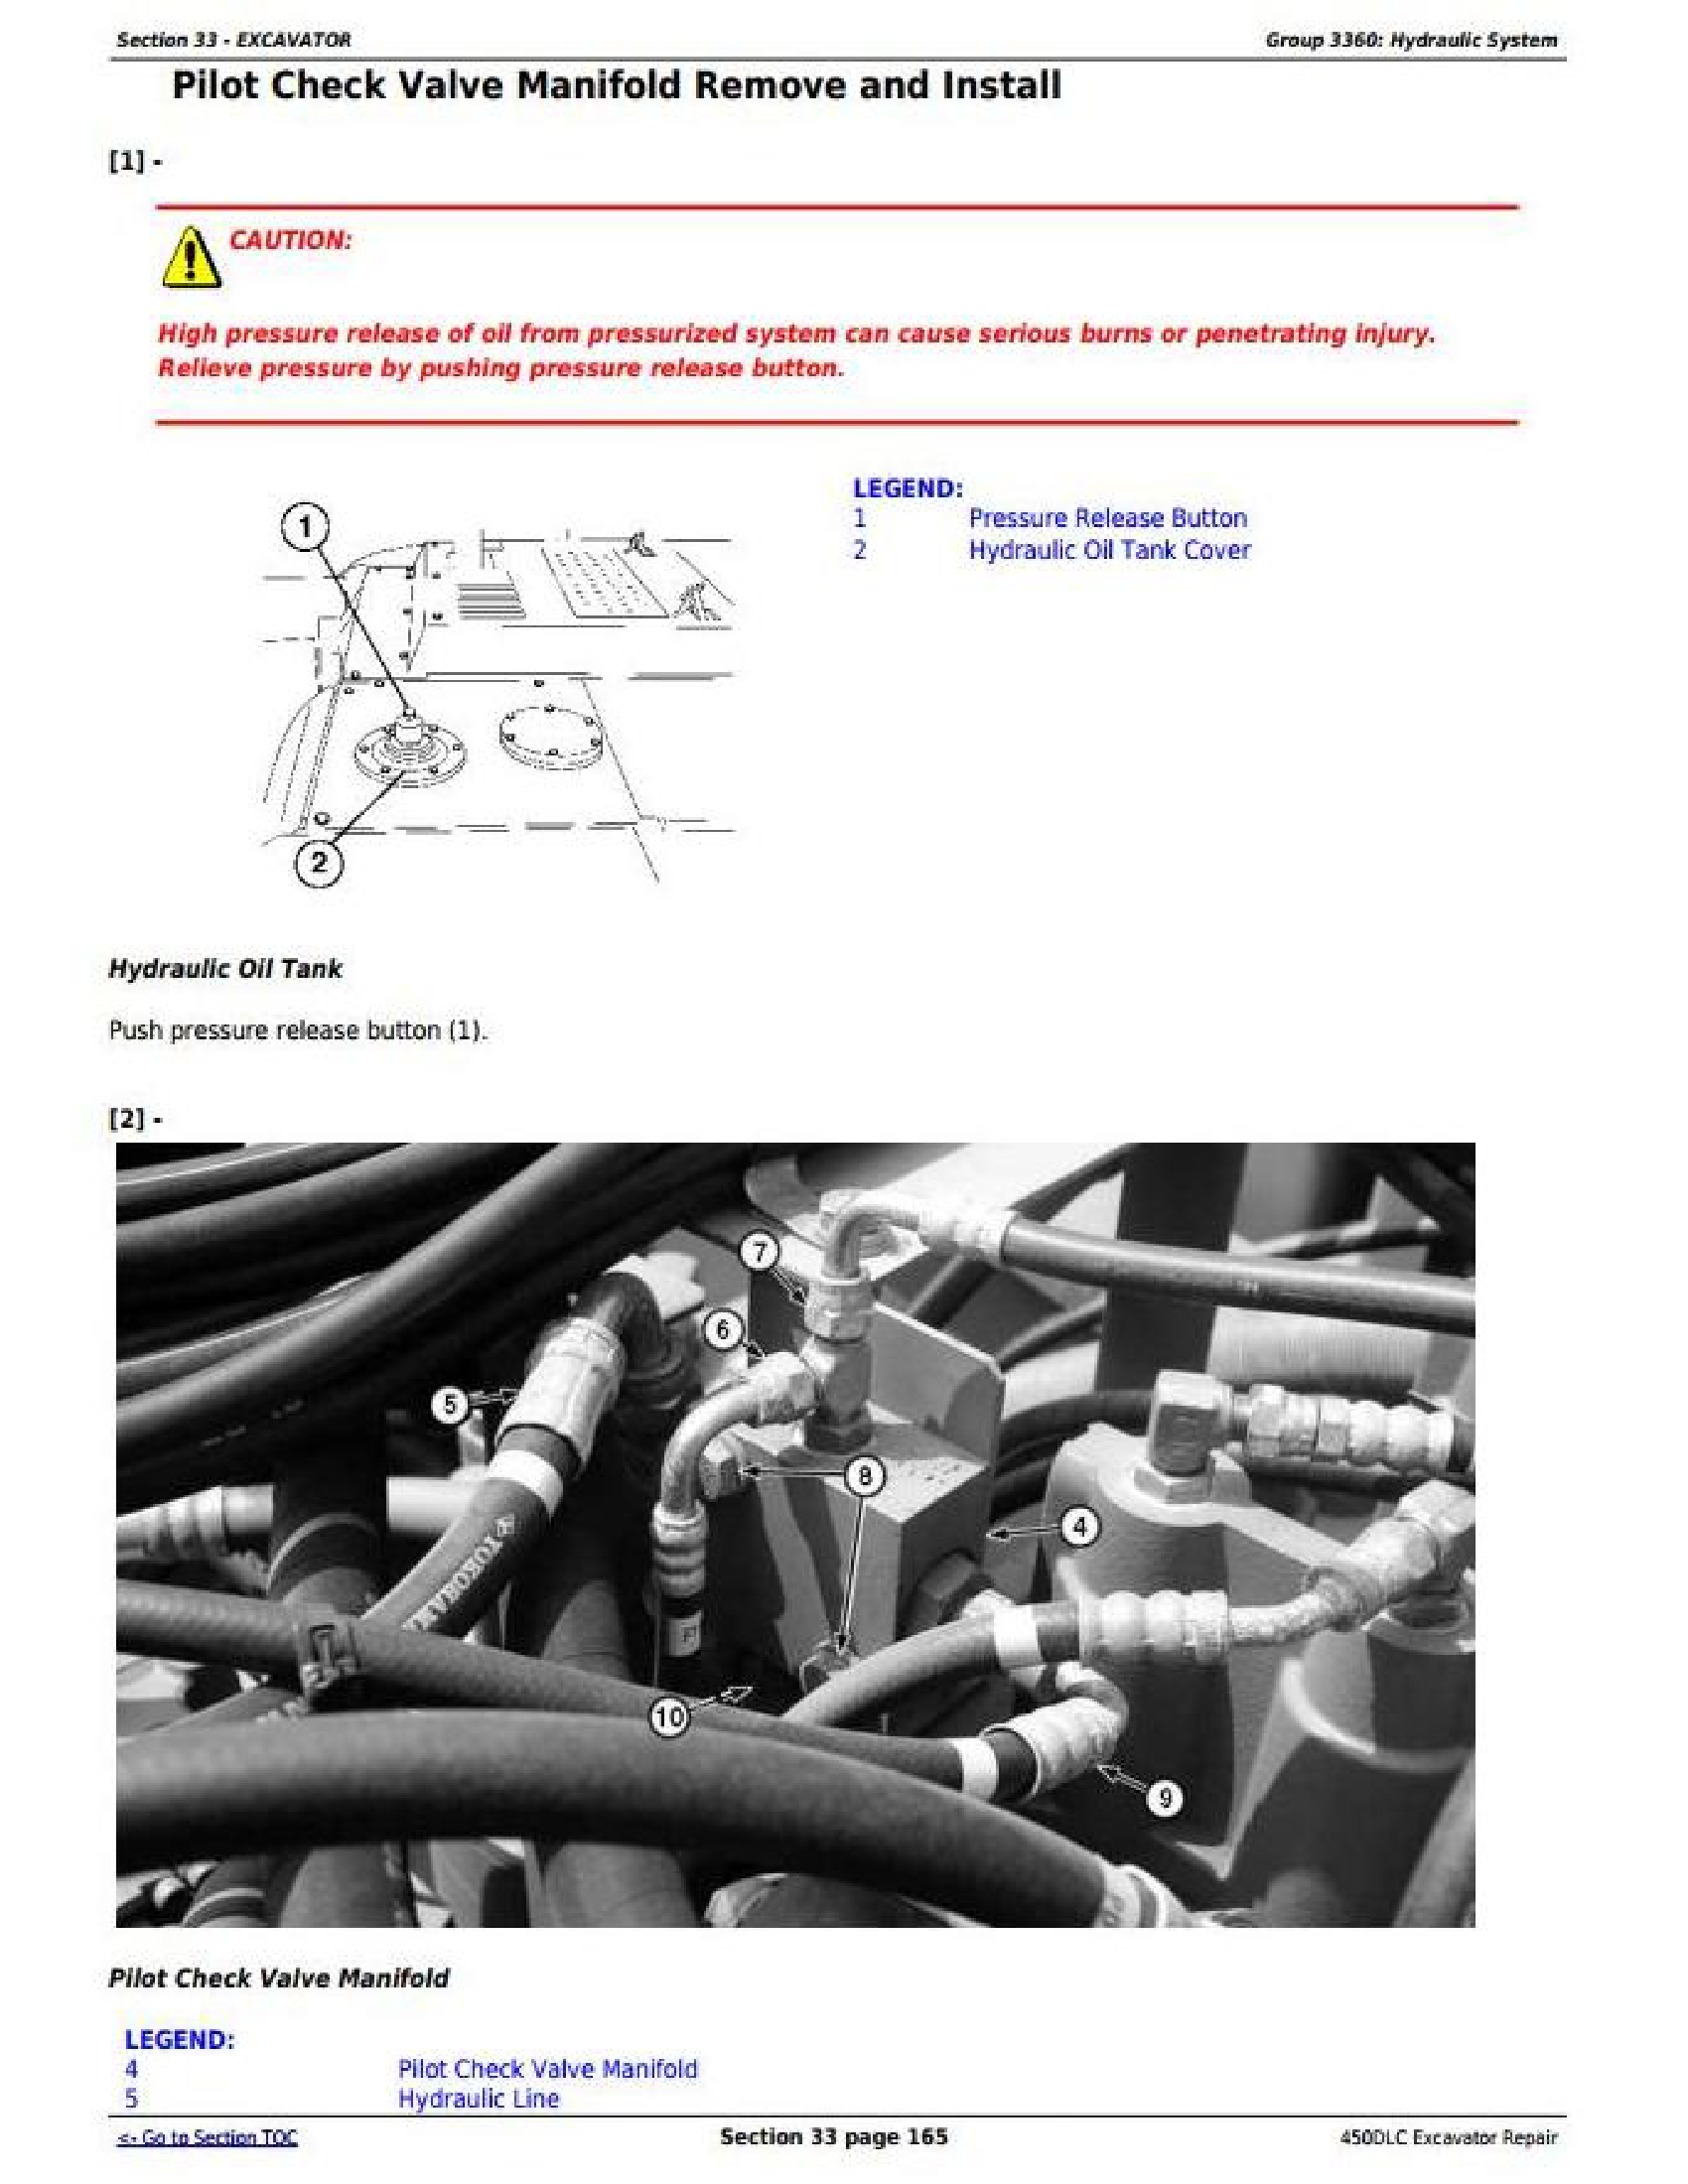 John Deere 4890 manual pdf